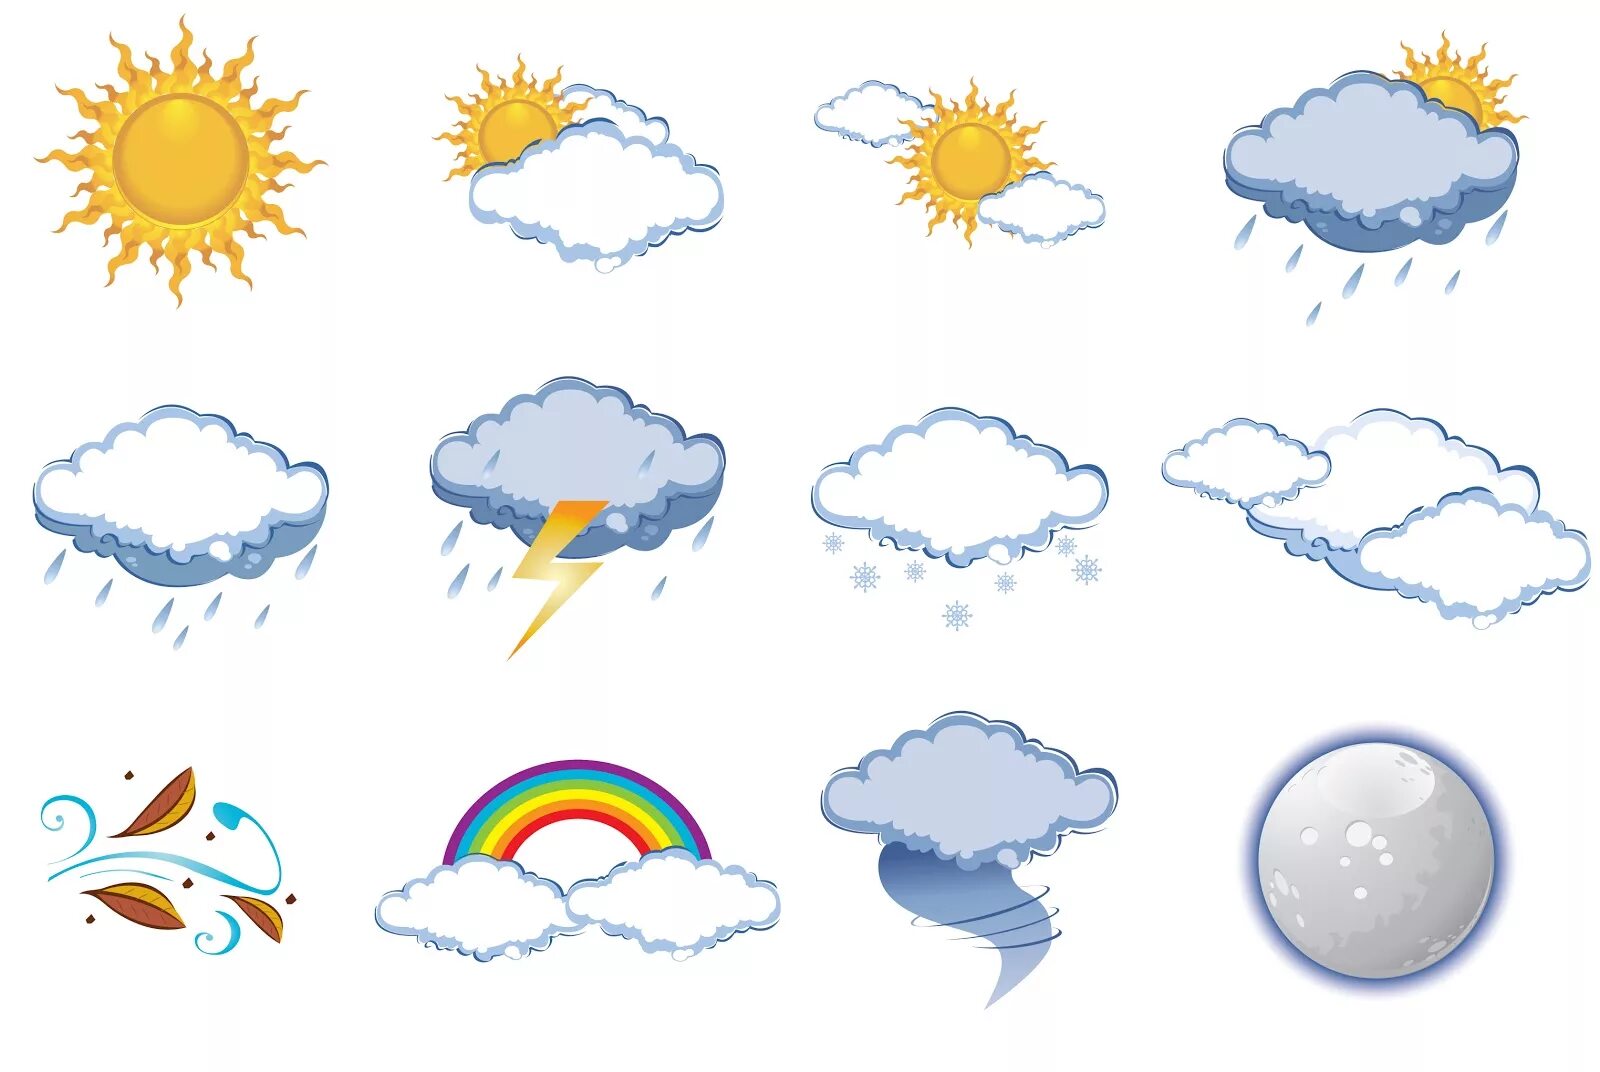 Погодные явления картинки для детей. Погода на английском языке. Gjujlf ZF fzukbqcrjv. Погода картинки на английском для детей. Погода свод